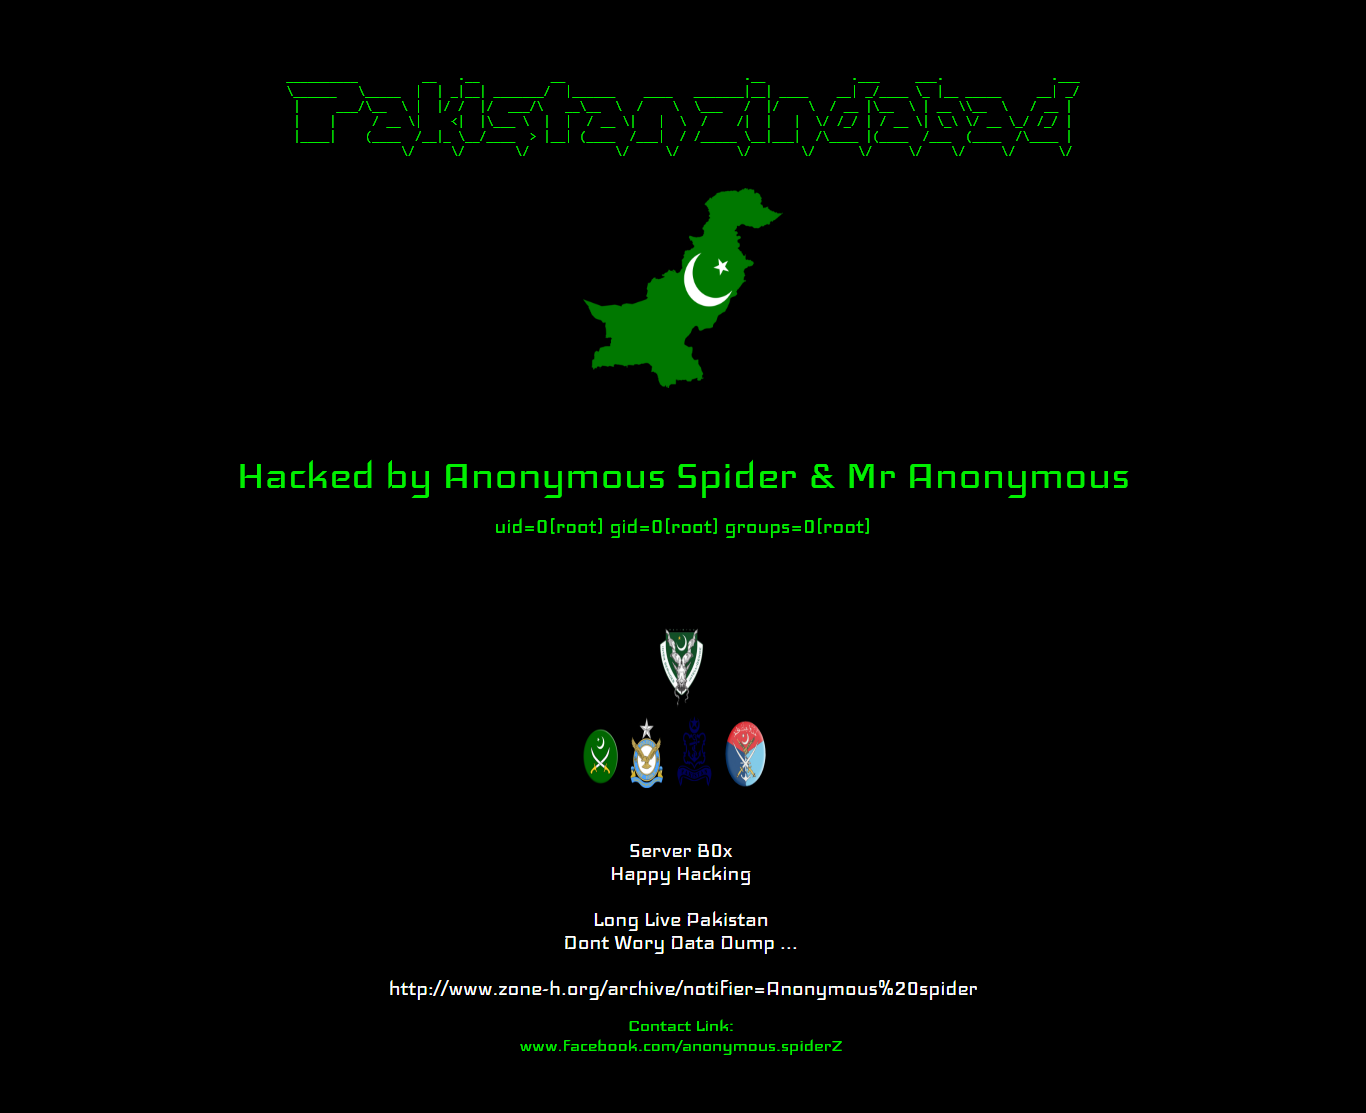 Mensagem colocada no site faz referência ao Paquistão